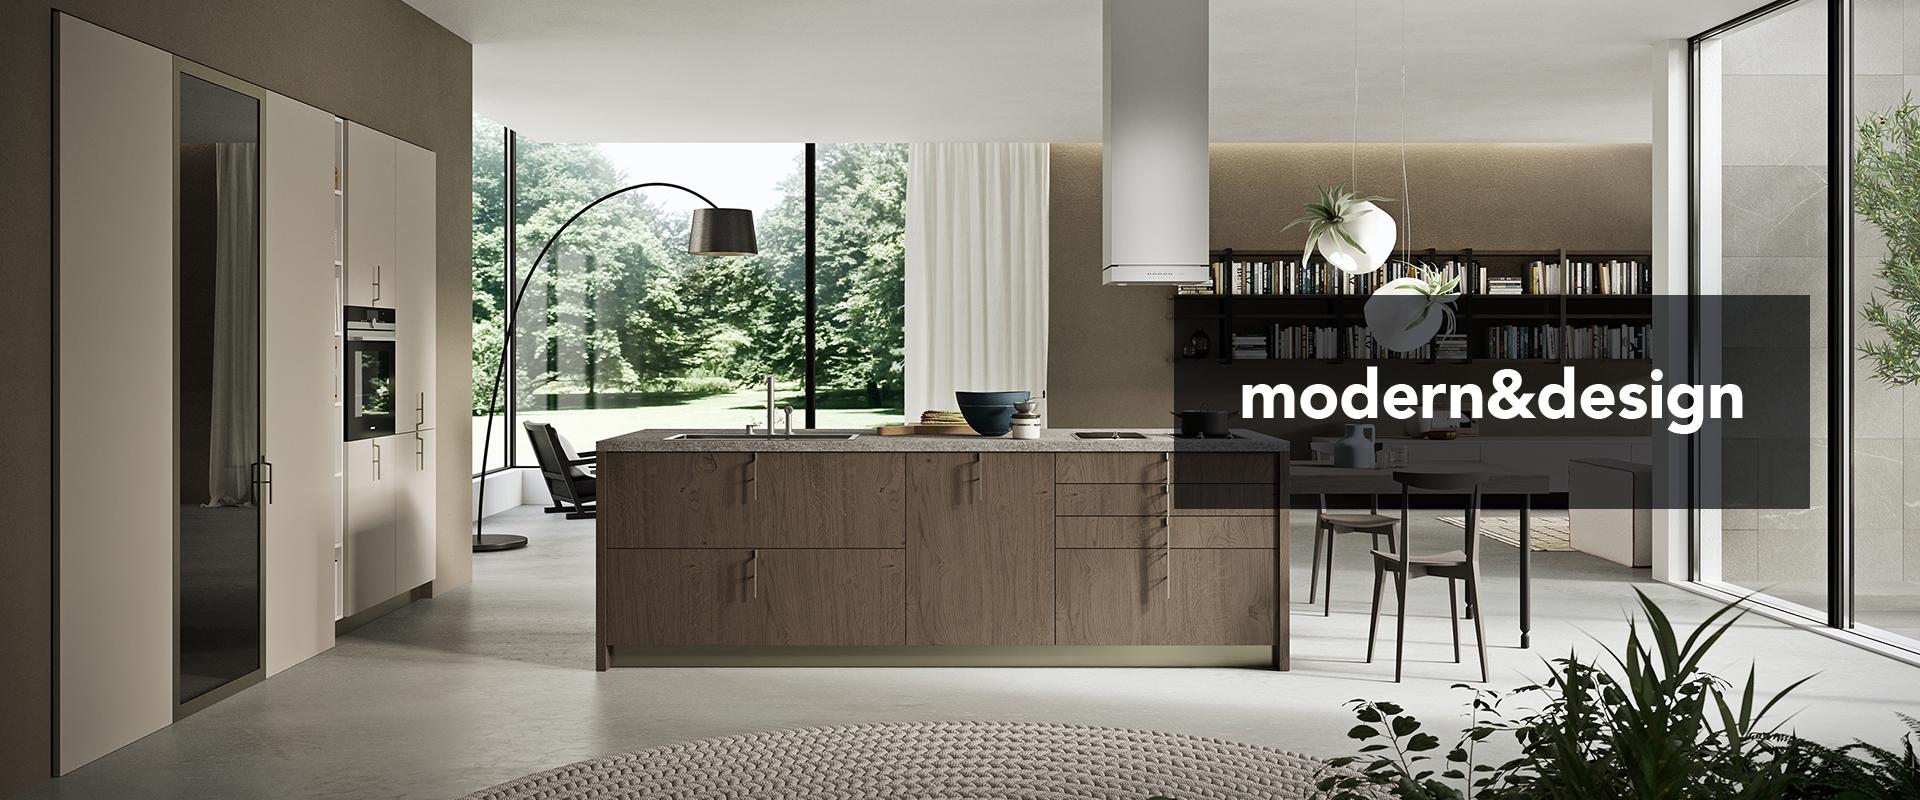 Cucine Modern & Design